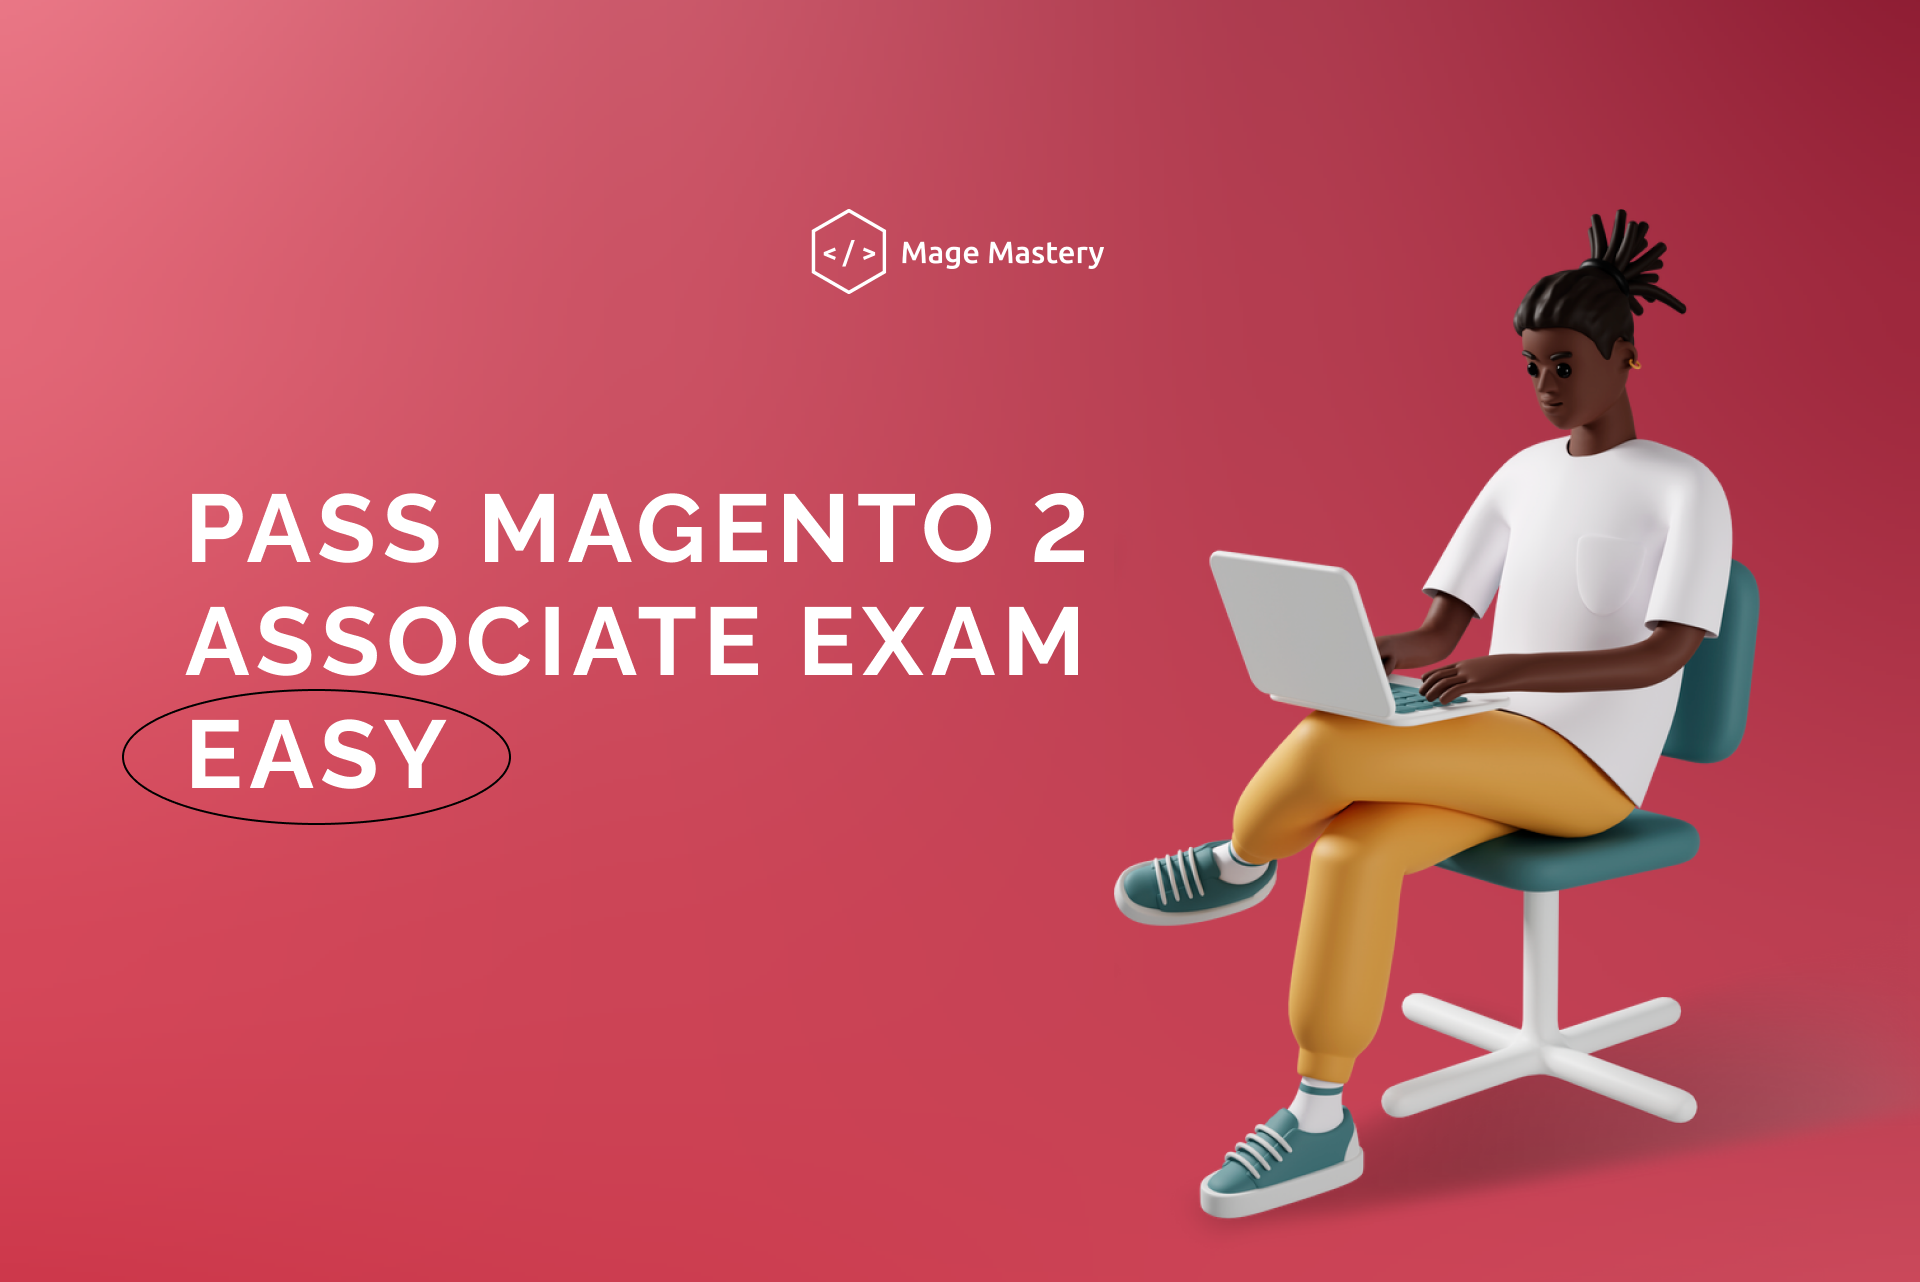 Do you want to pass Magento 2 Associate Exam?